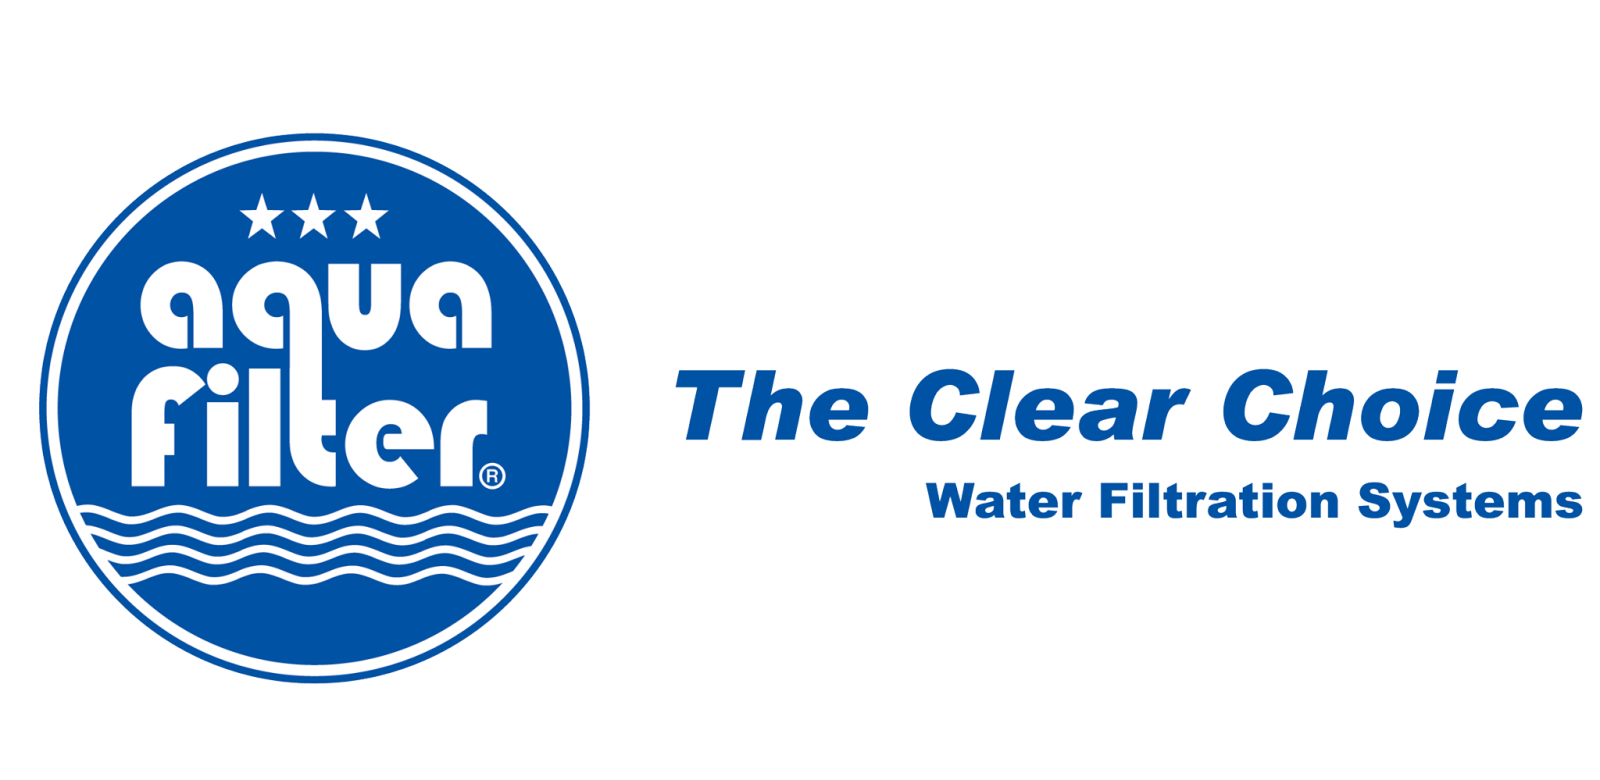 Chính sách bảo hành và đổi trả sản phẩm chính hãng Aquafilter được quy định cụ thể và công khai